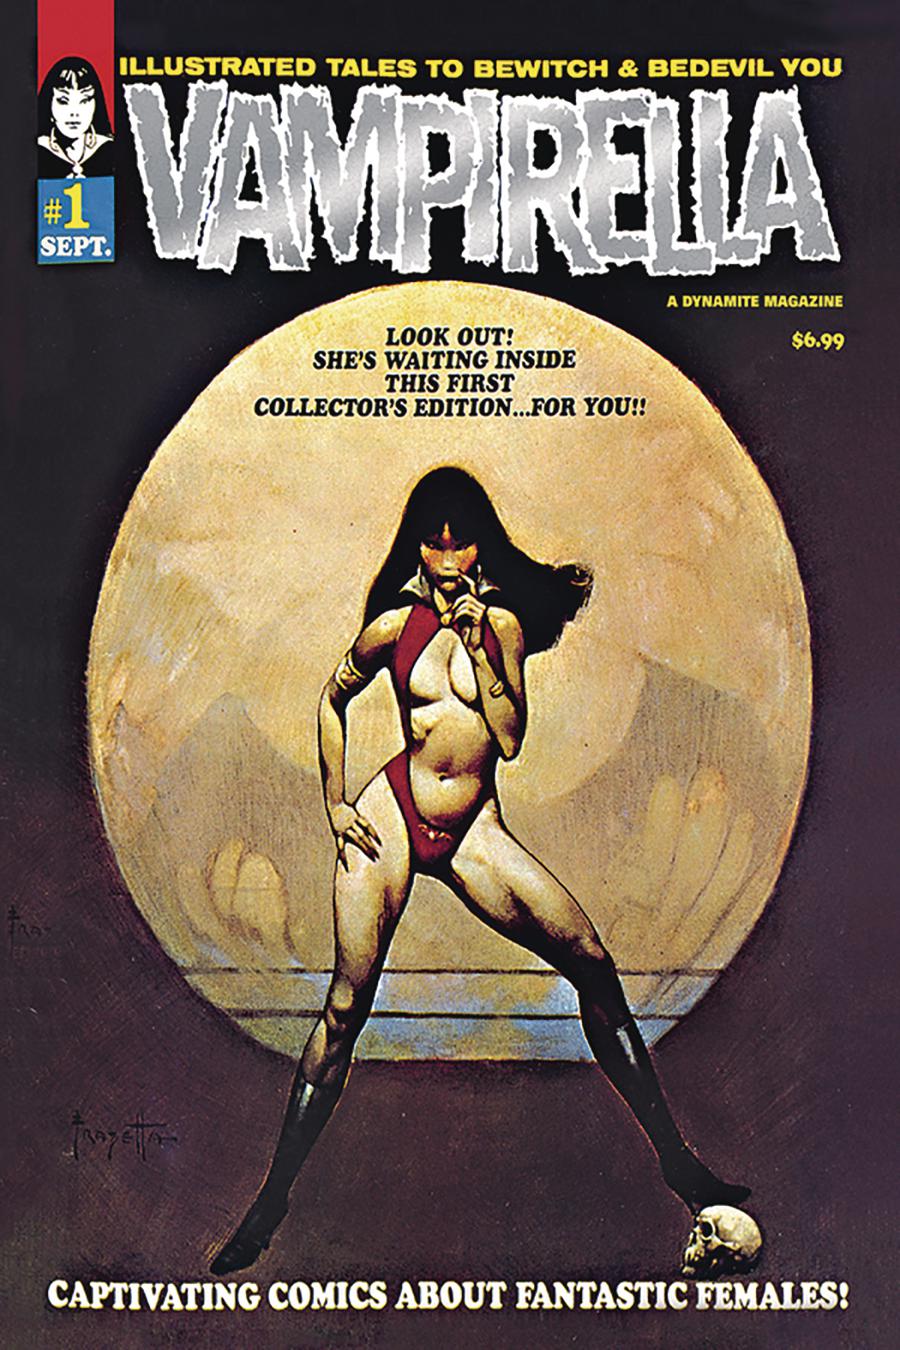 Vampirella Magazine #1 1969 Replica Edition Cover D Limited Platinum Foil Cover